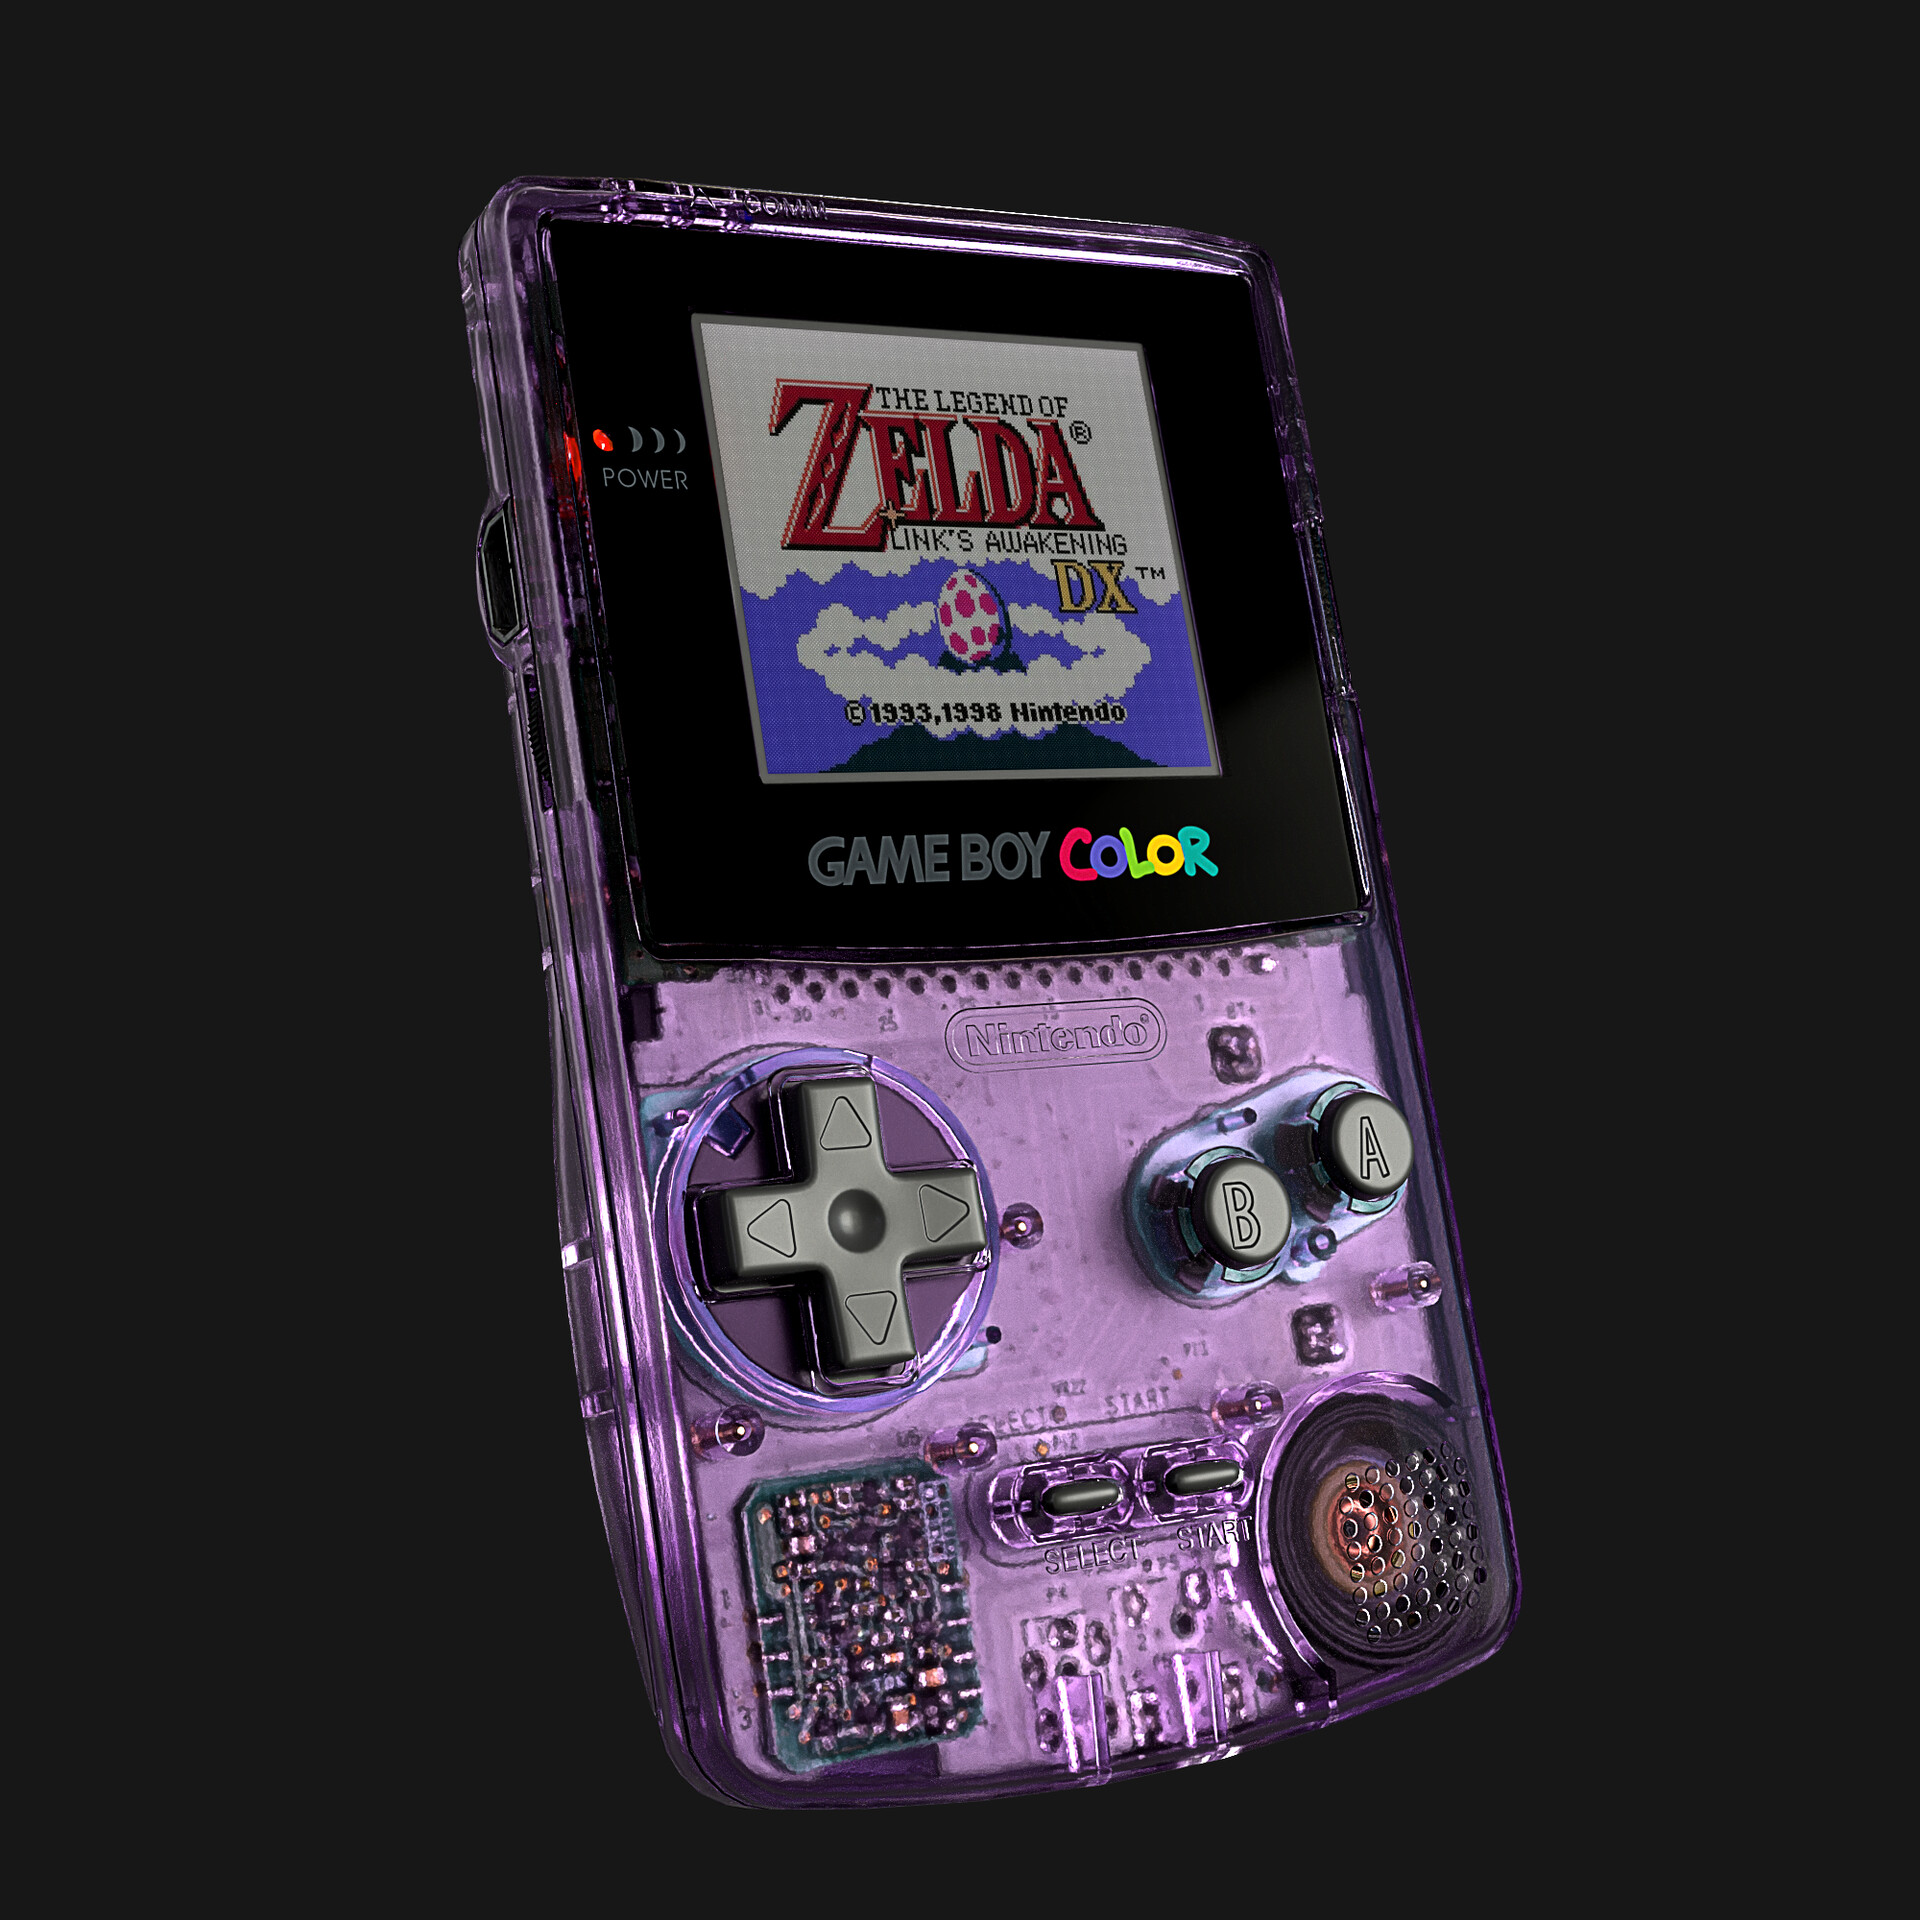 The Legend of Zelda Link's Awakening DX Nintendo Game Boy Color Video Game